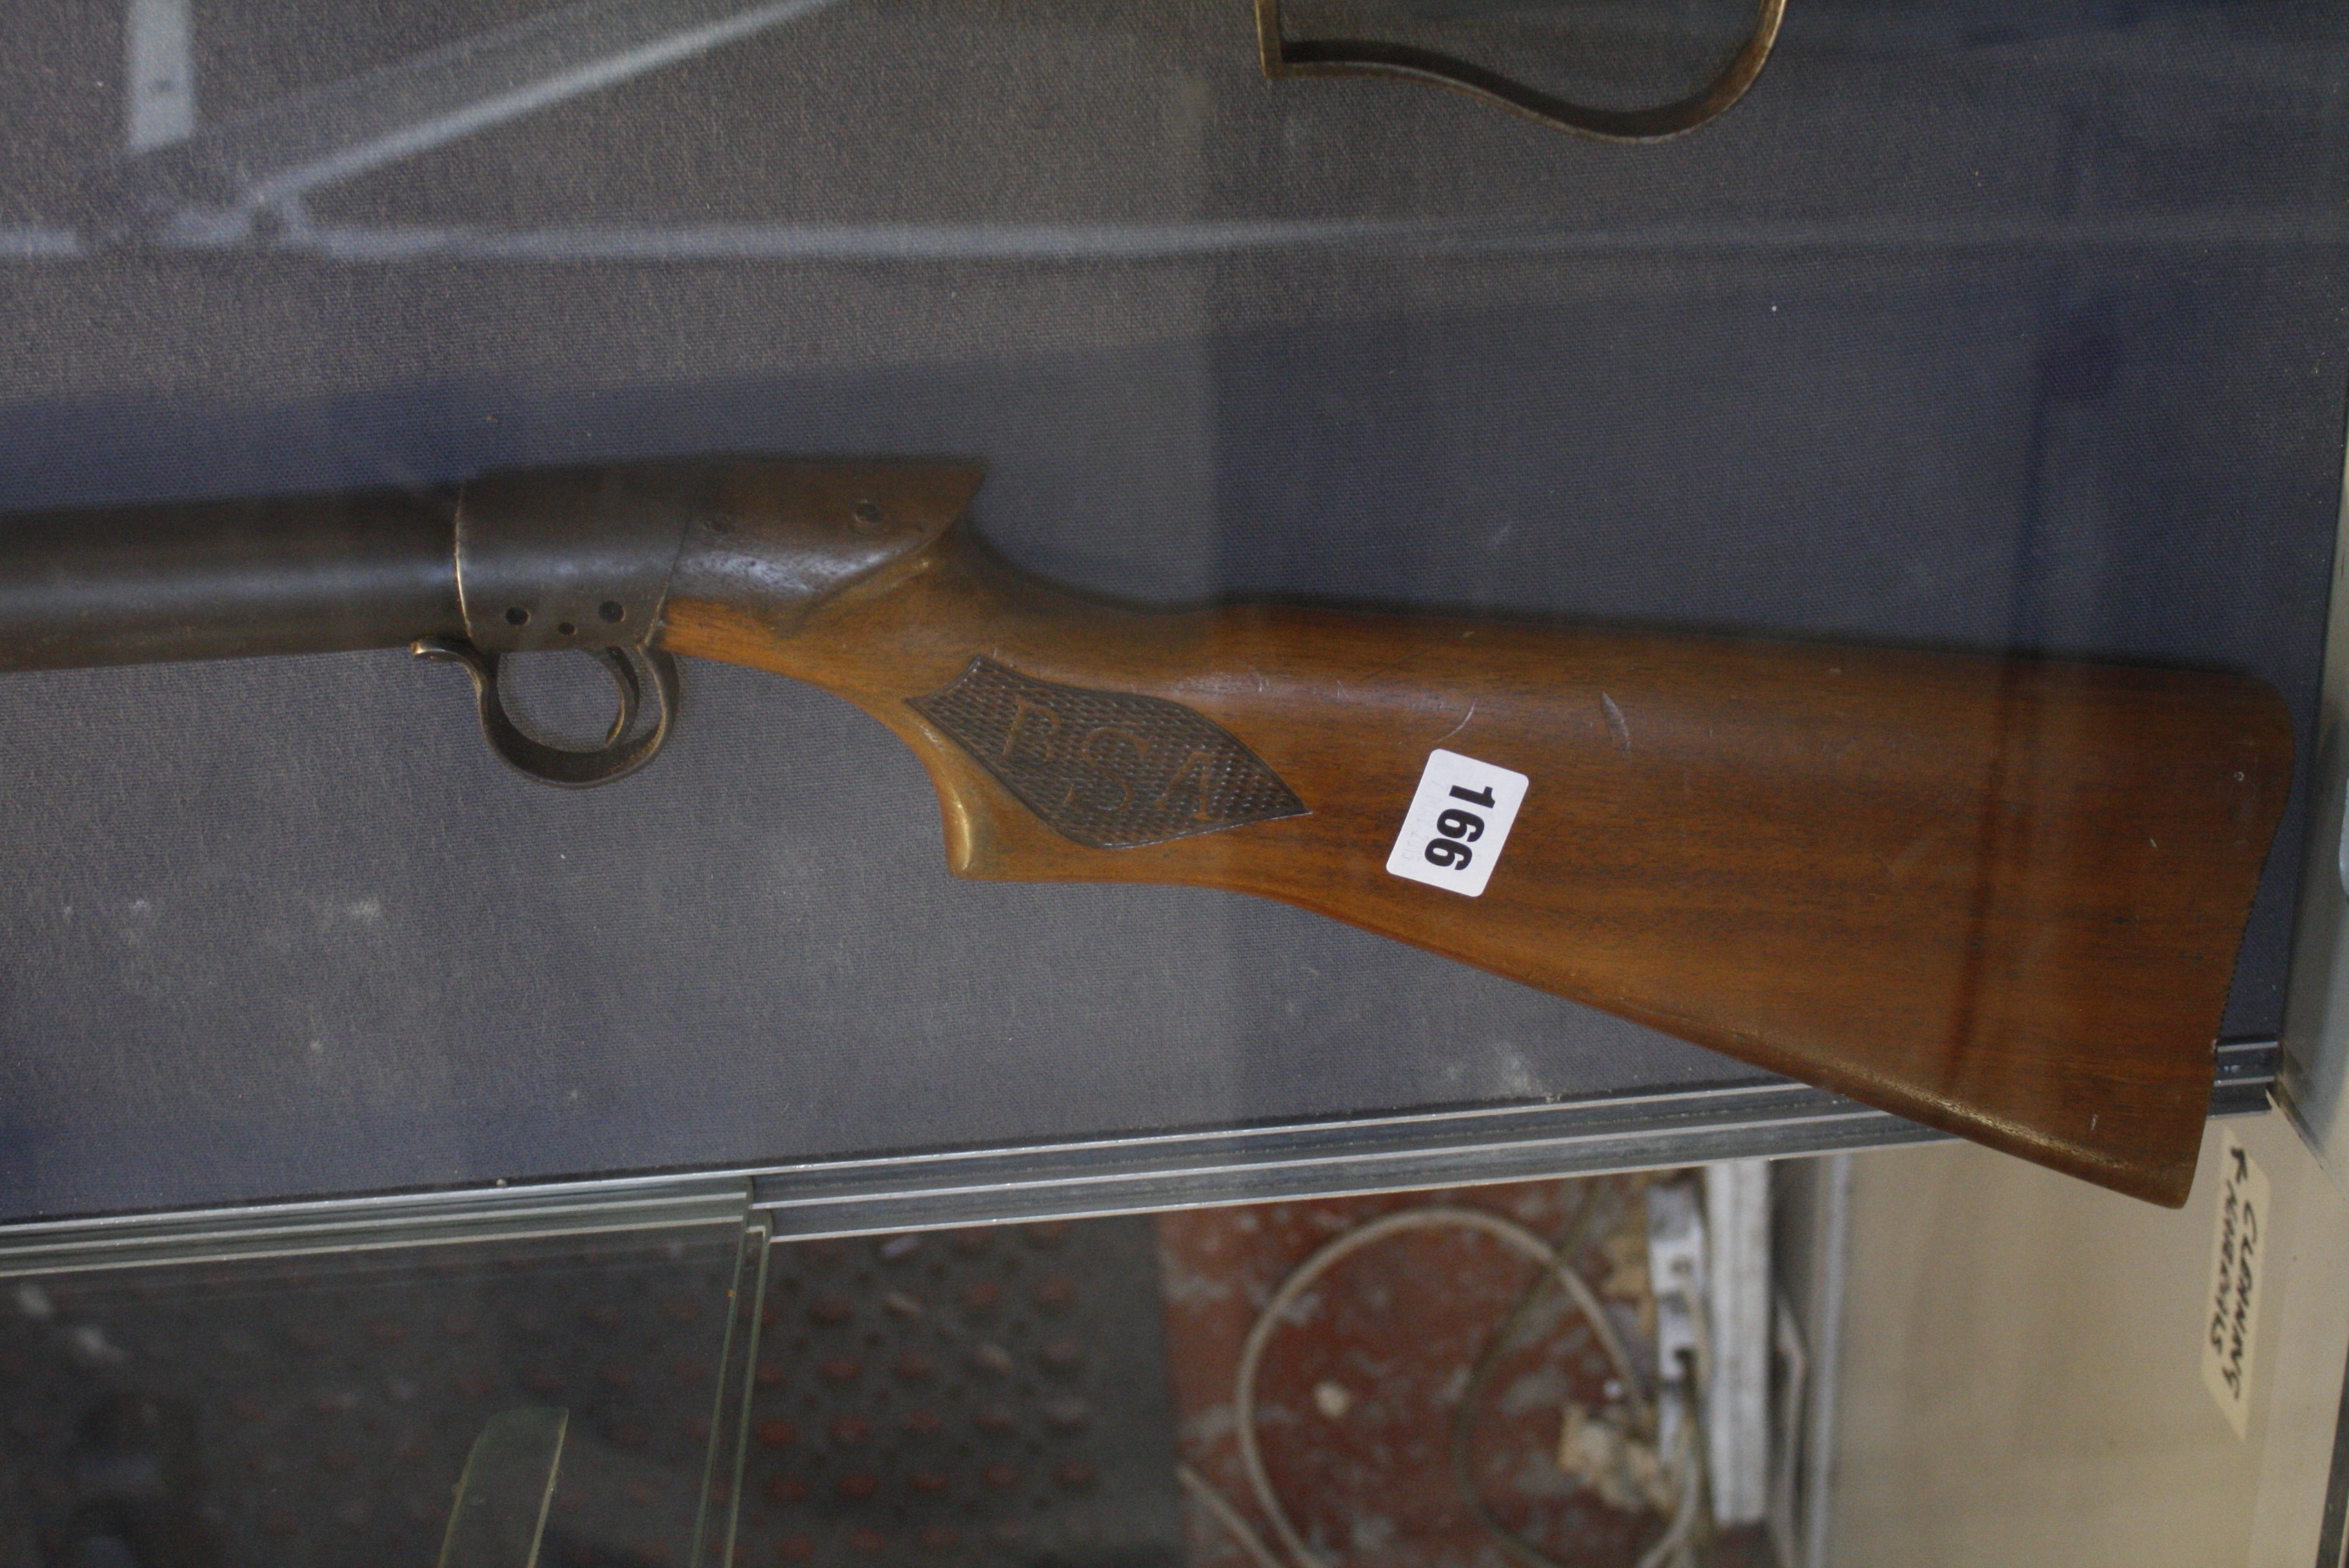 A BSA air rifle, serial no. T7079